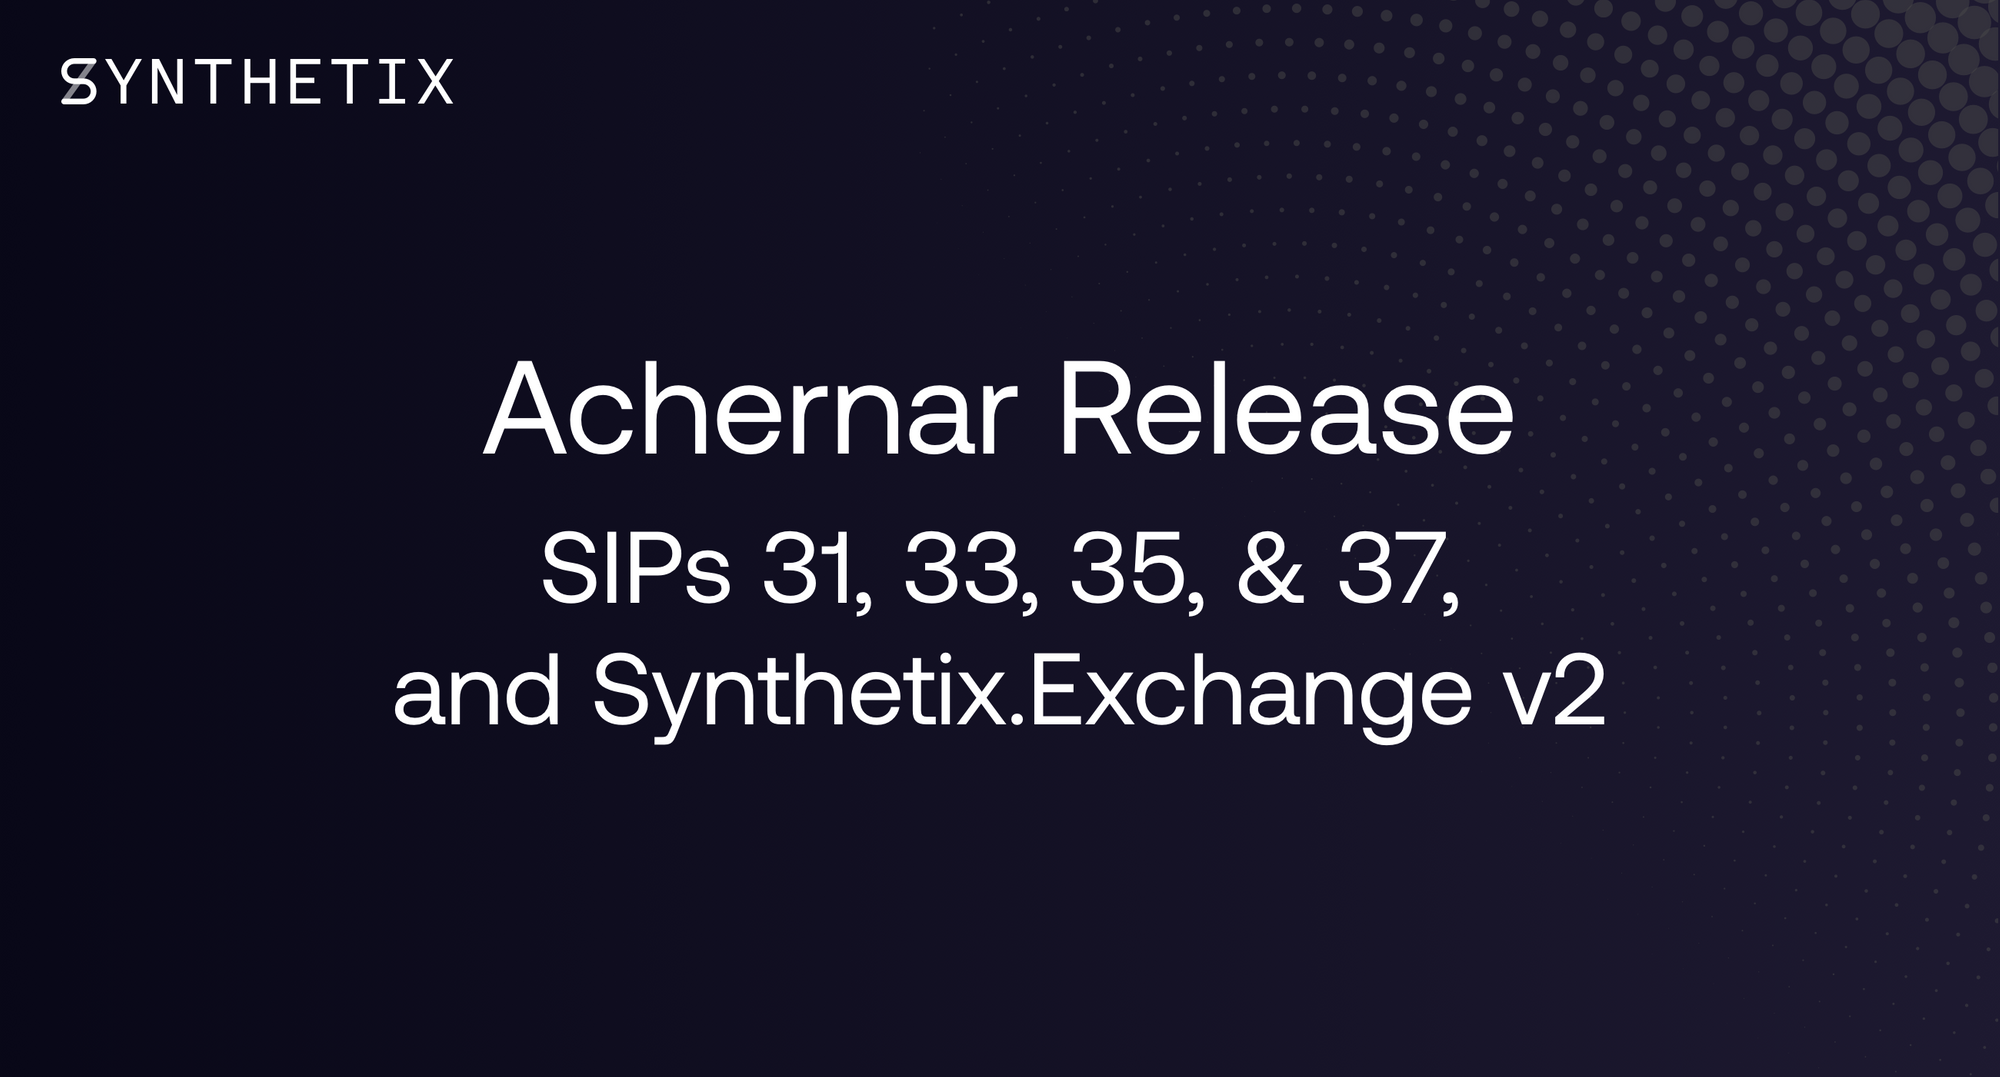 The Achernar Release